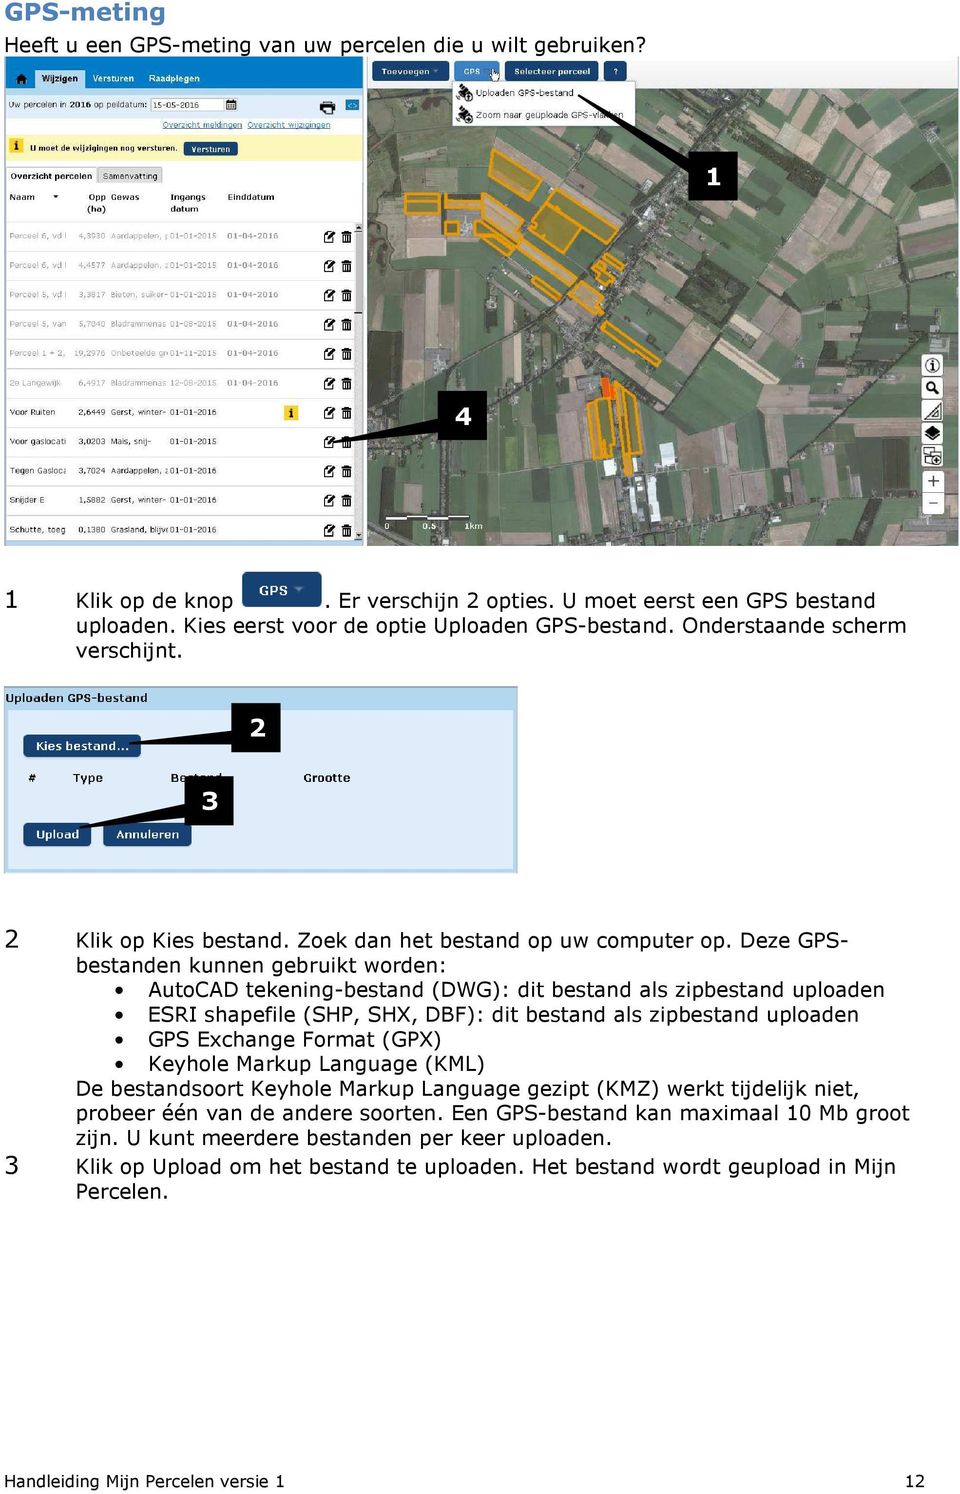 Deze GPSbestanden kunnen gebruikt worden: AutoCAD tekening-bestand (DWG): dit bestand als zipbestand uploaden ESRI shapefile (SHP, SHX, DBF): dit bestand als zipbestand uploaden GPS Exchange Format